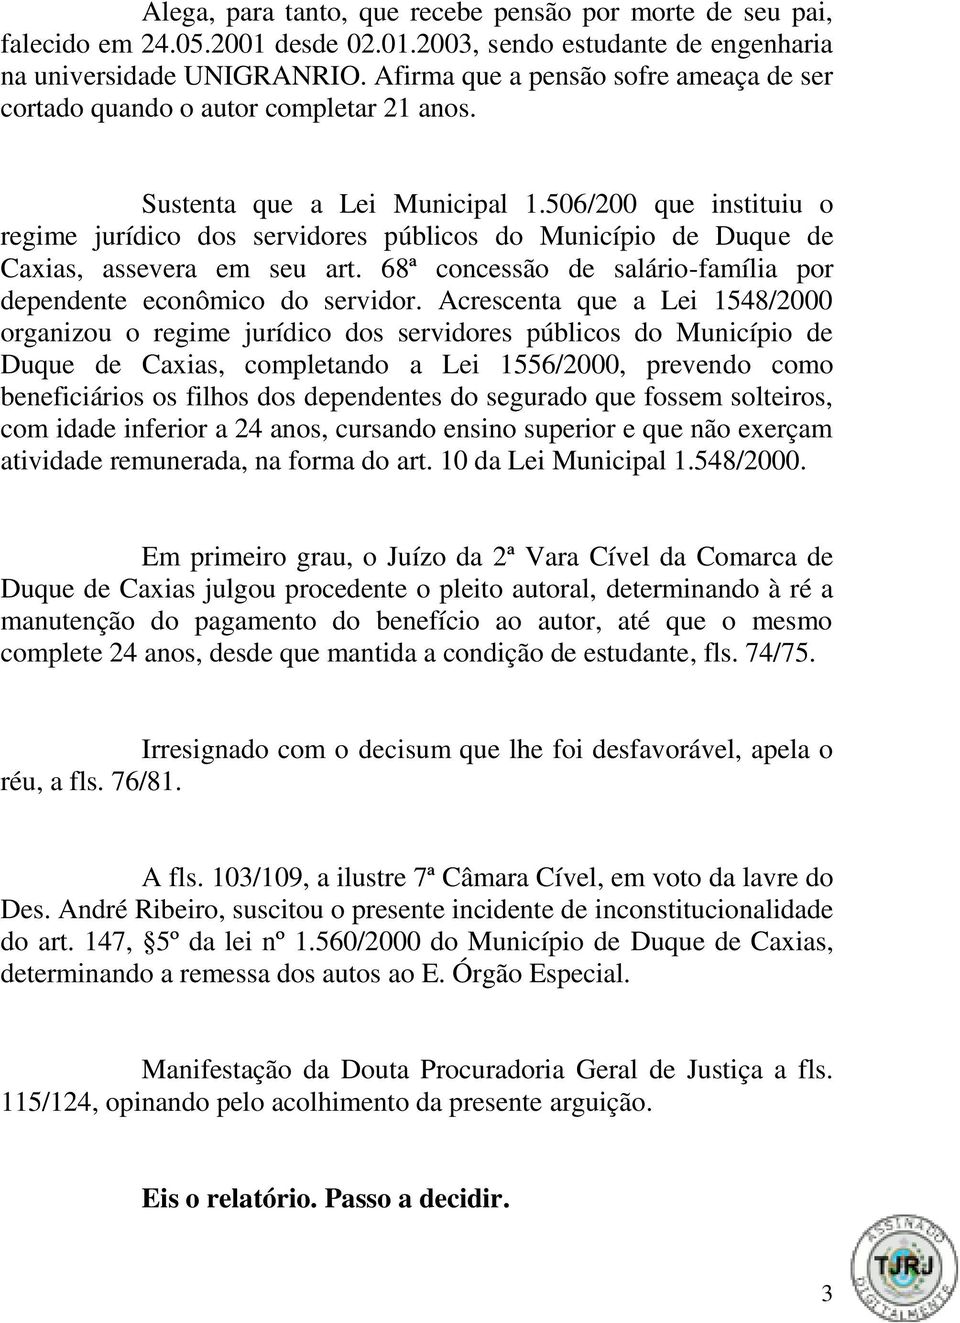 506/200 que instituiu o regime jurídico dos servidores públicos do Município de Duque de Caxias, assevera em seu art. 68ª concessão de salário-família por dependente econômico do servidor.